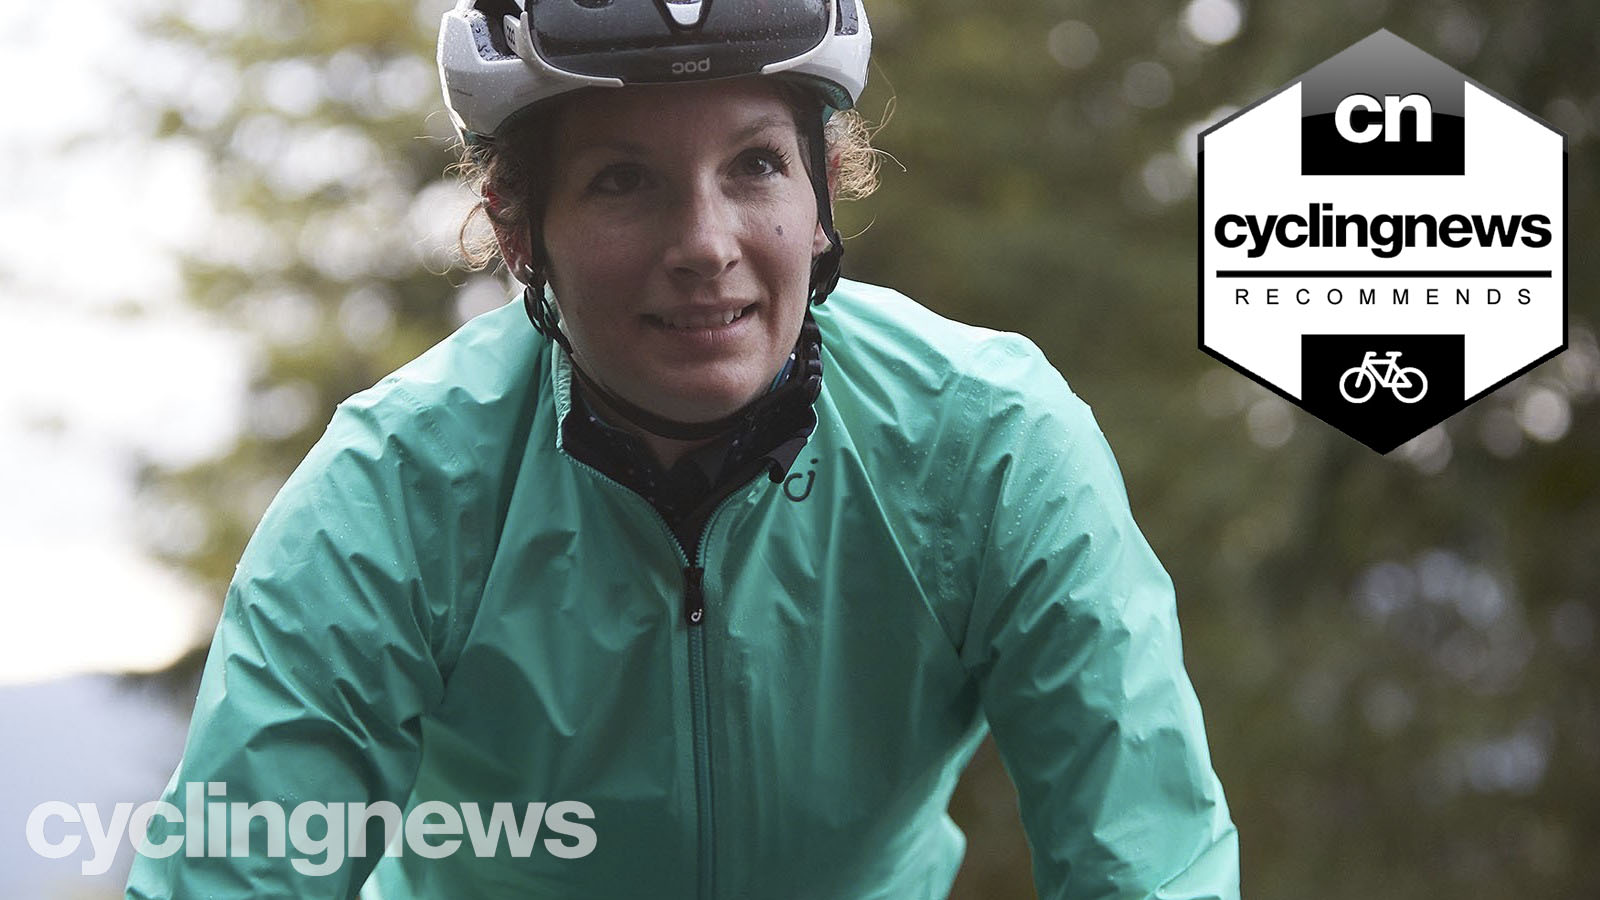 Woman Ladies Cycling Rain Jackets Hi-Vis Waterproof Running Top Coat Hooded